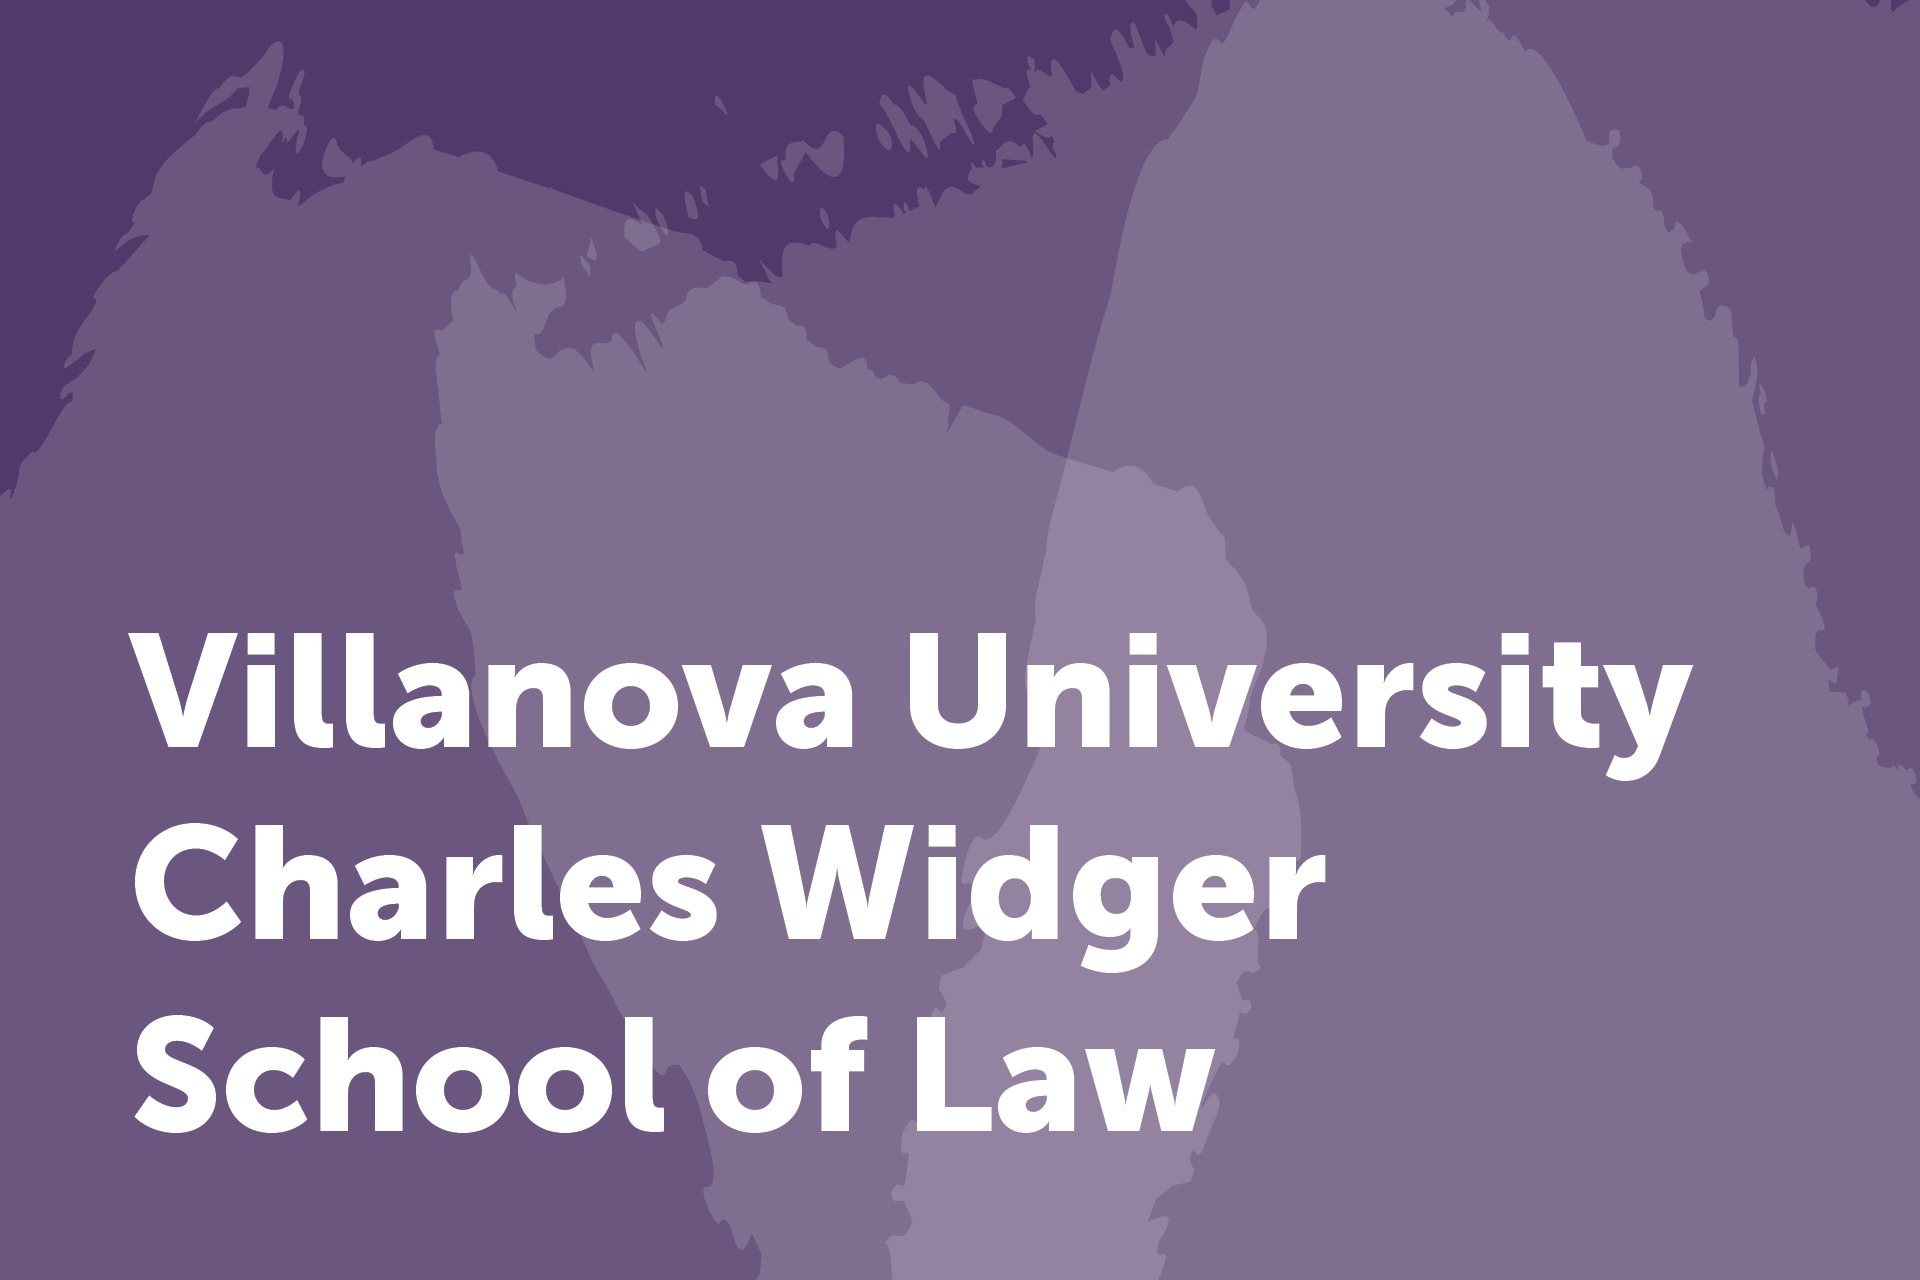 Villanova university Charles Widger school of law